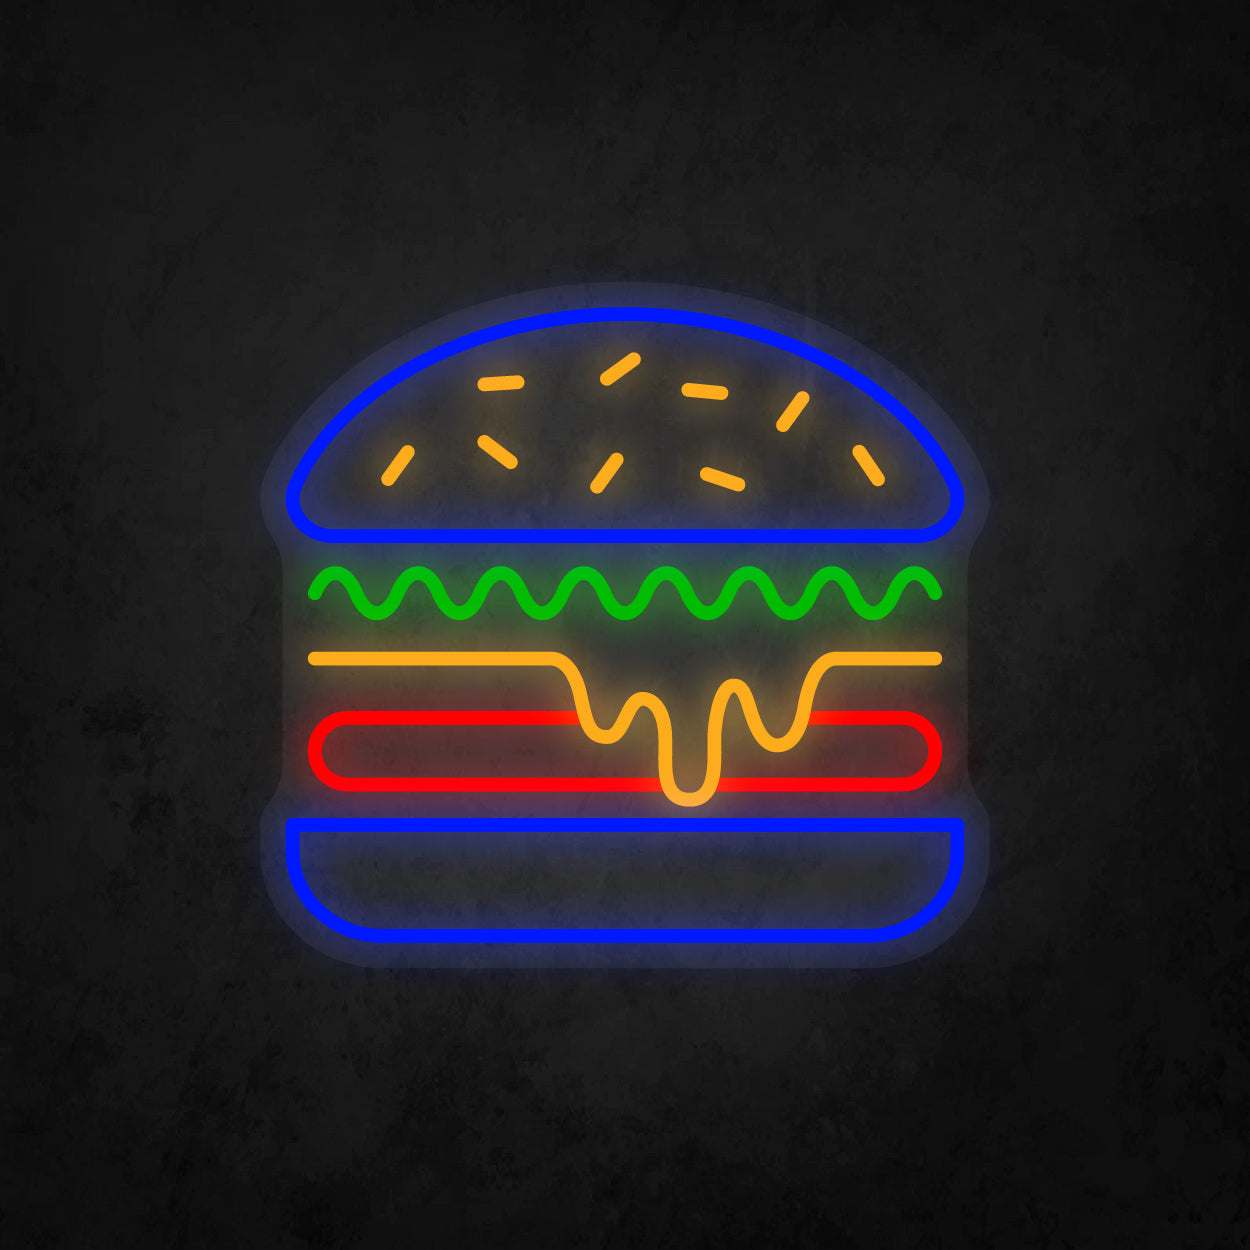 LED Neon Sign - Hamburger Large